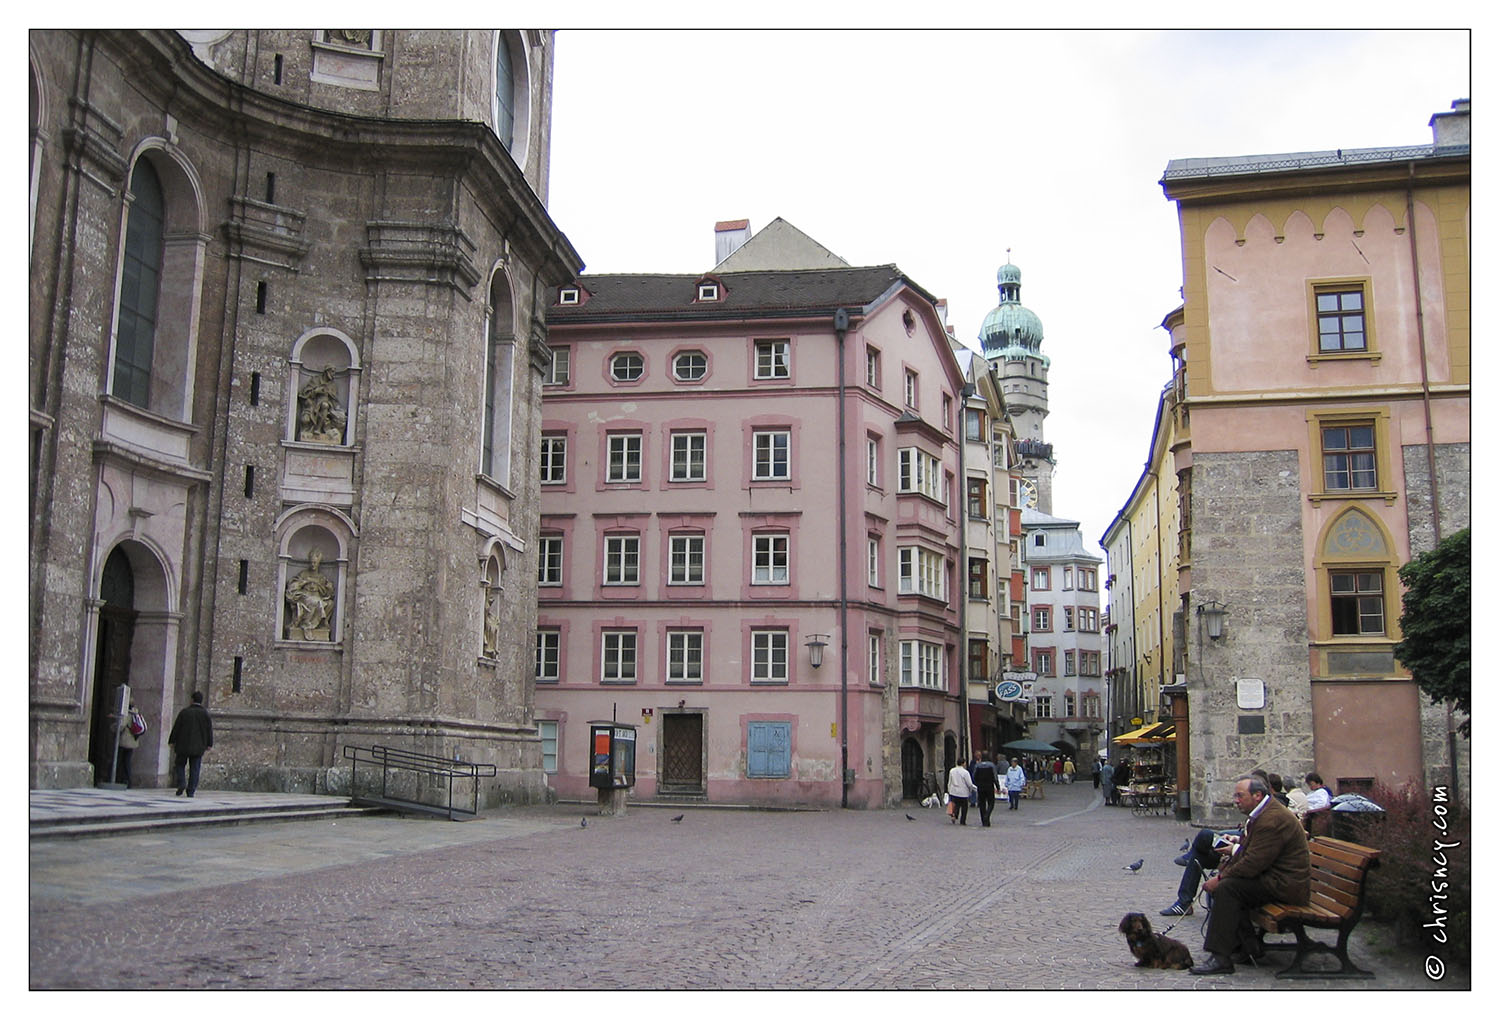 20050606-228_4045-Innsbruck_DomPlatz.jpg